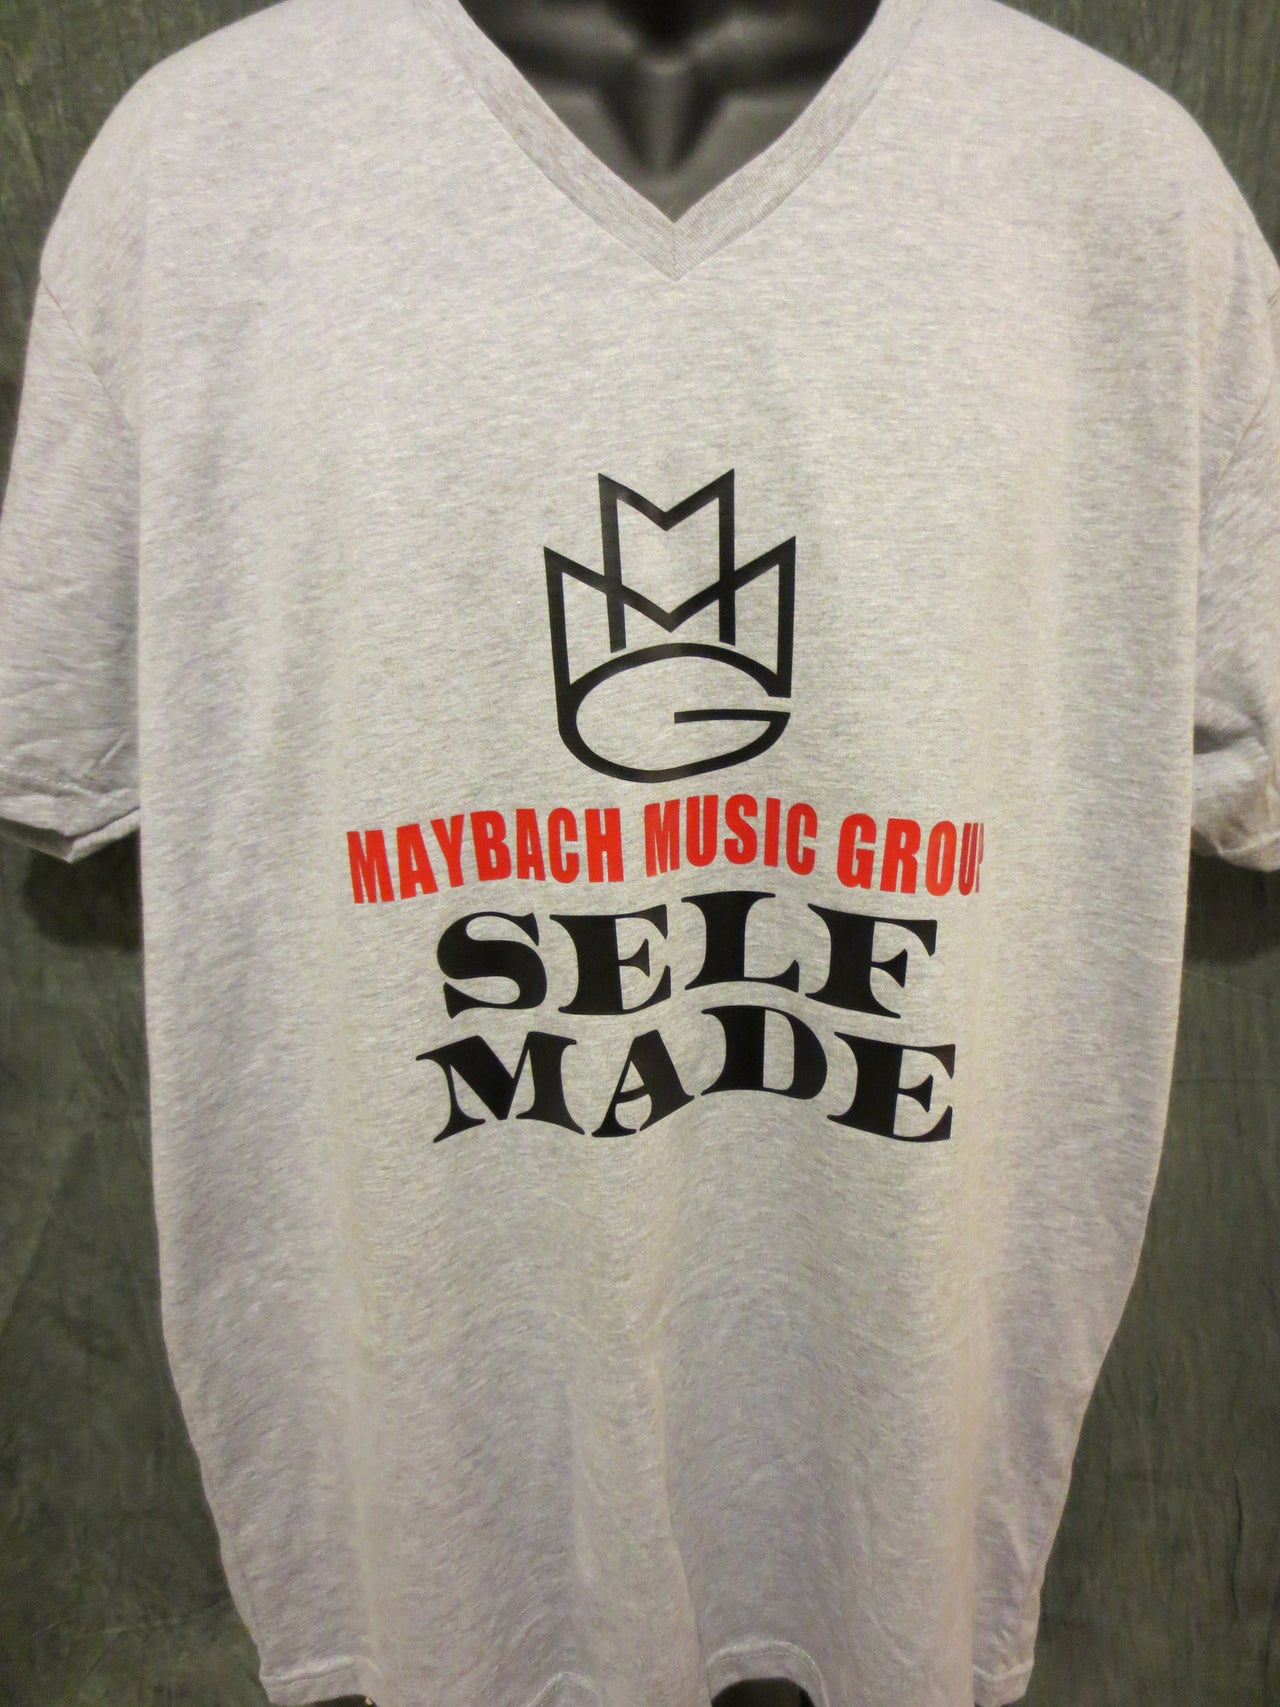 Maybach Music Group "Self Made" V-Neck Tshirt - TshirtNow.net - 8